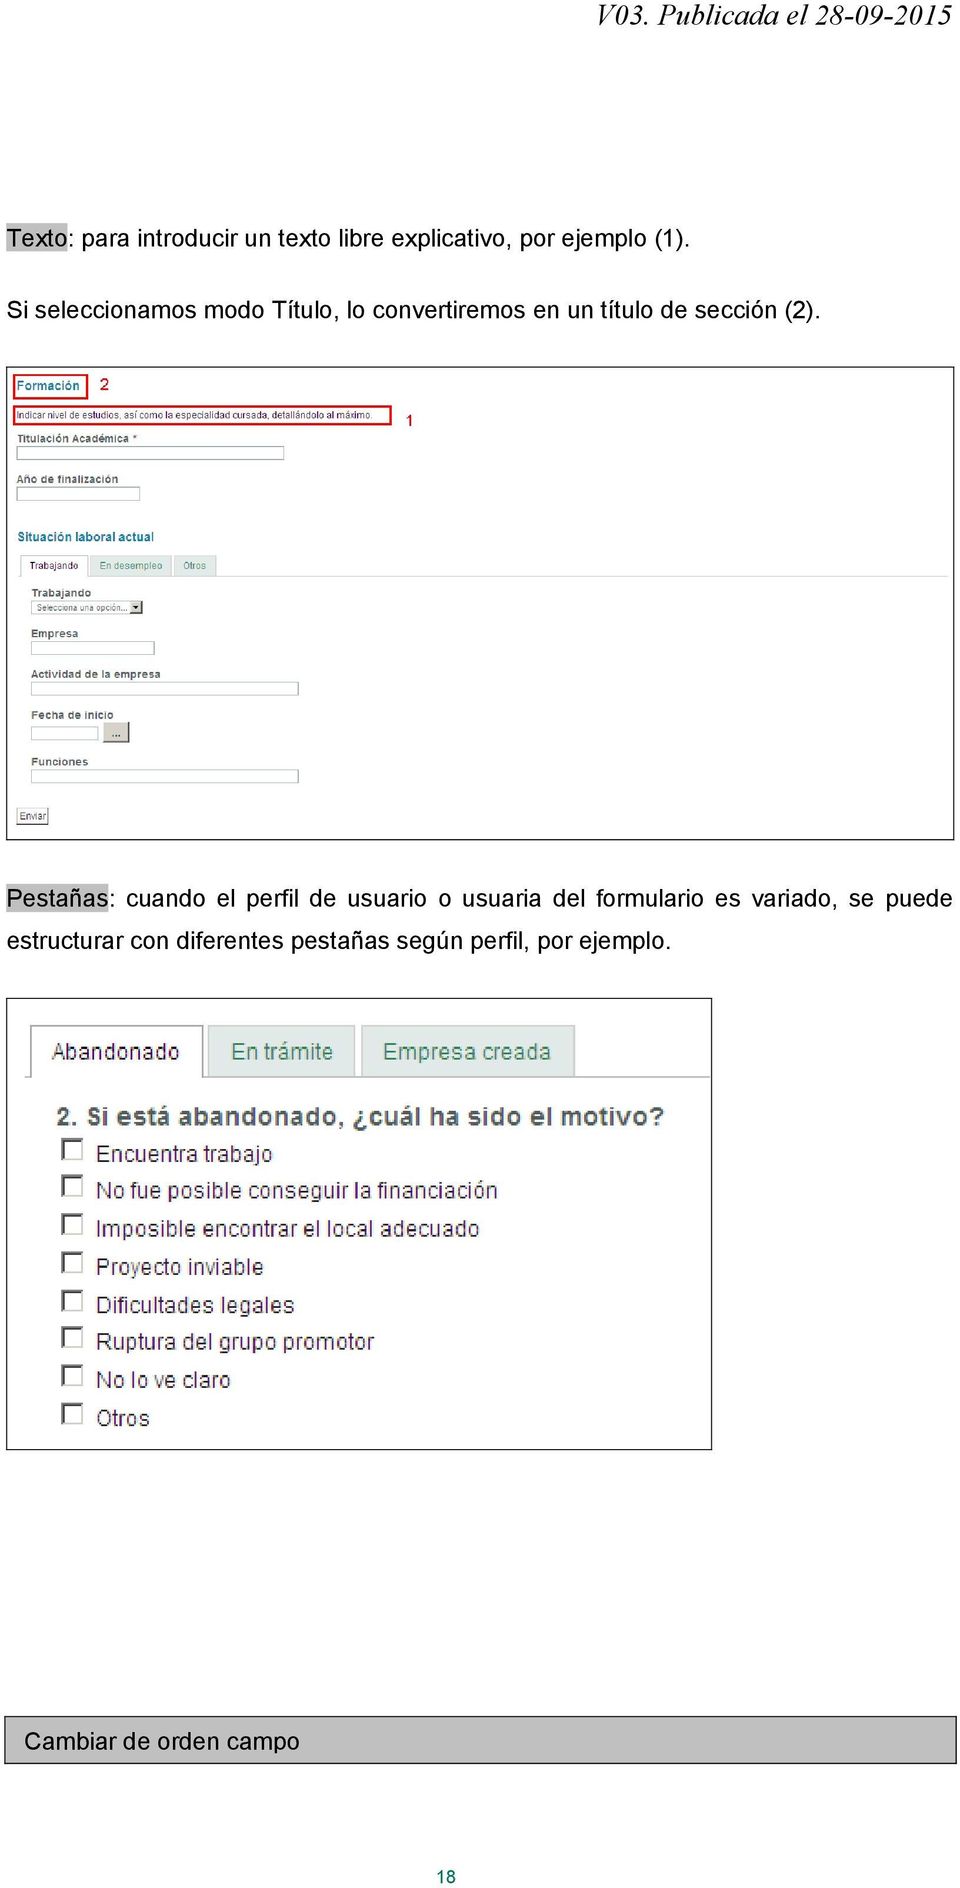 Pestañas: cuando el perfil de usuario o usuaria del formulario es variado, se